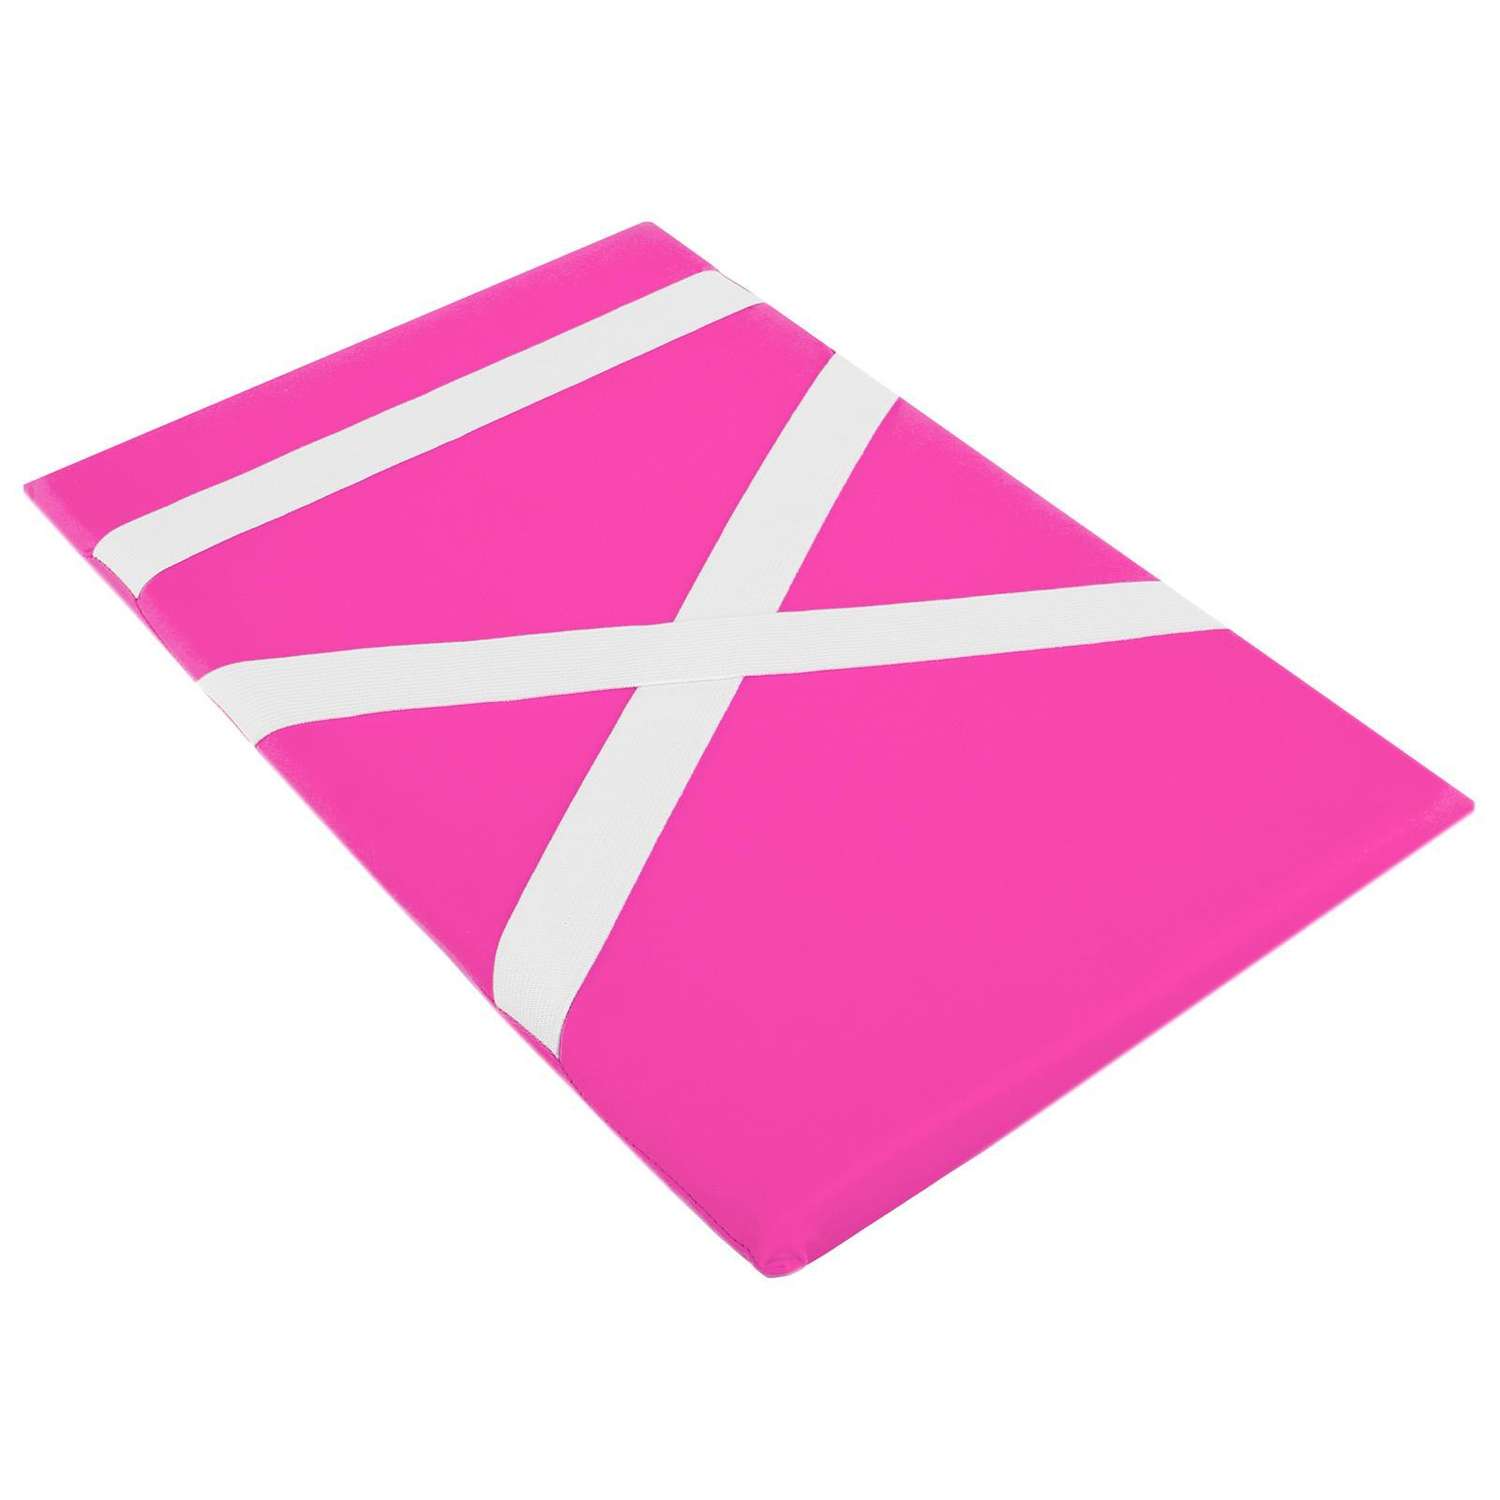 Защита спины гимнастическая Grace Dance подушка для растяжки. лайкра. цвет розовый. 38 х 25 см - фото 2